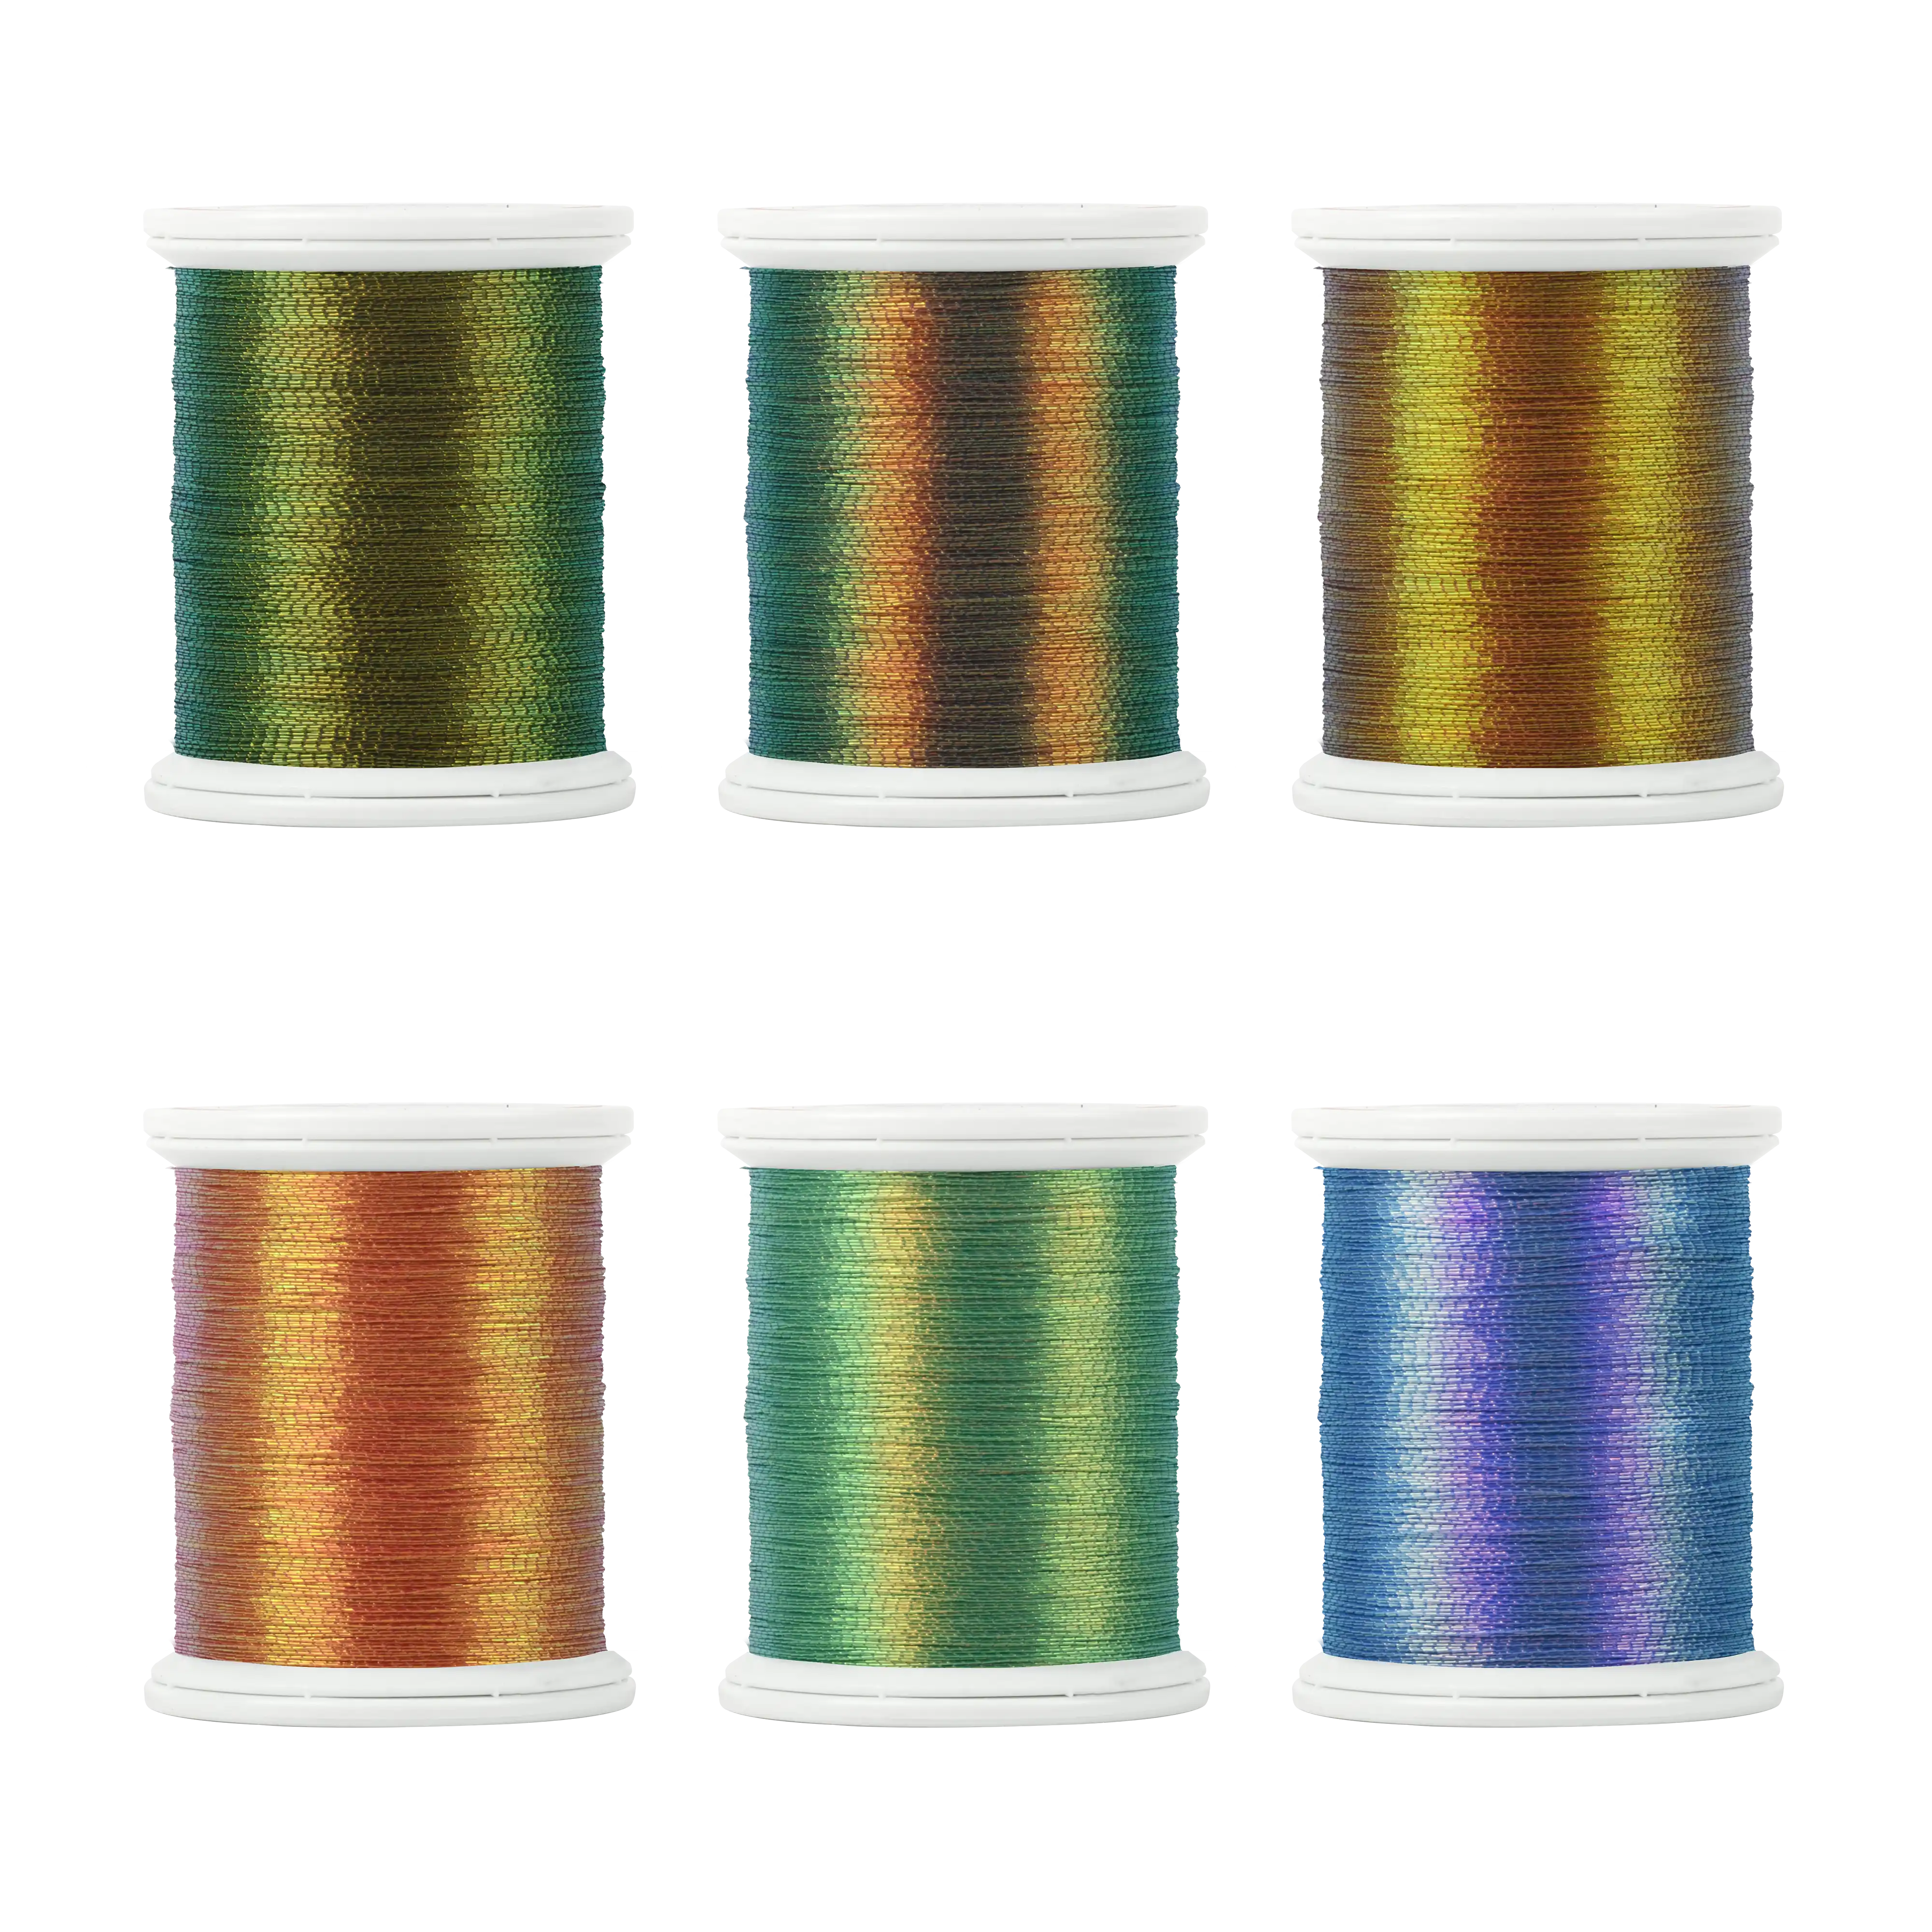 Metallic thread